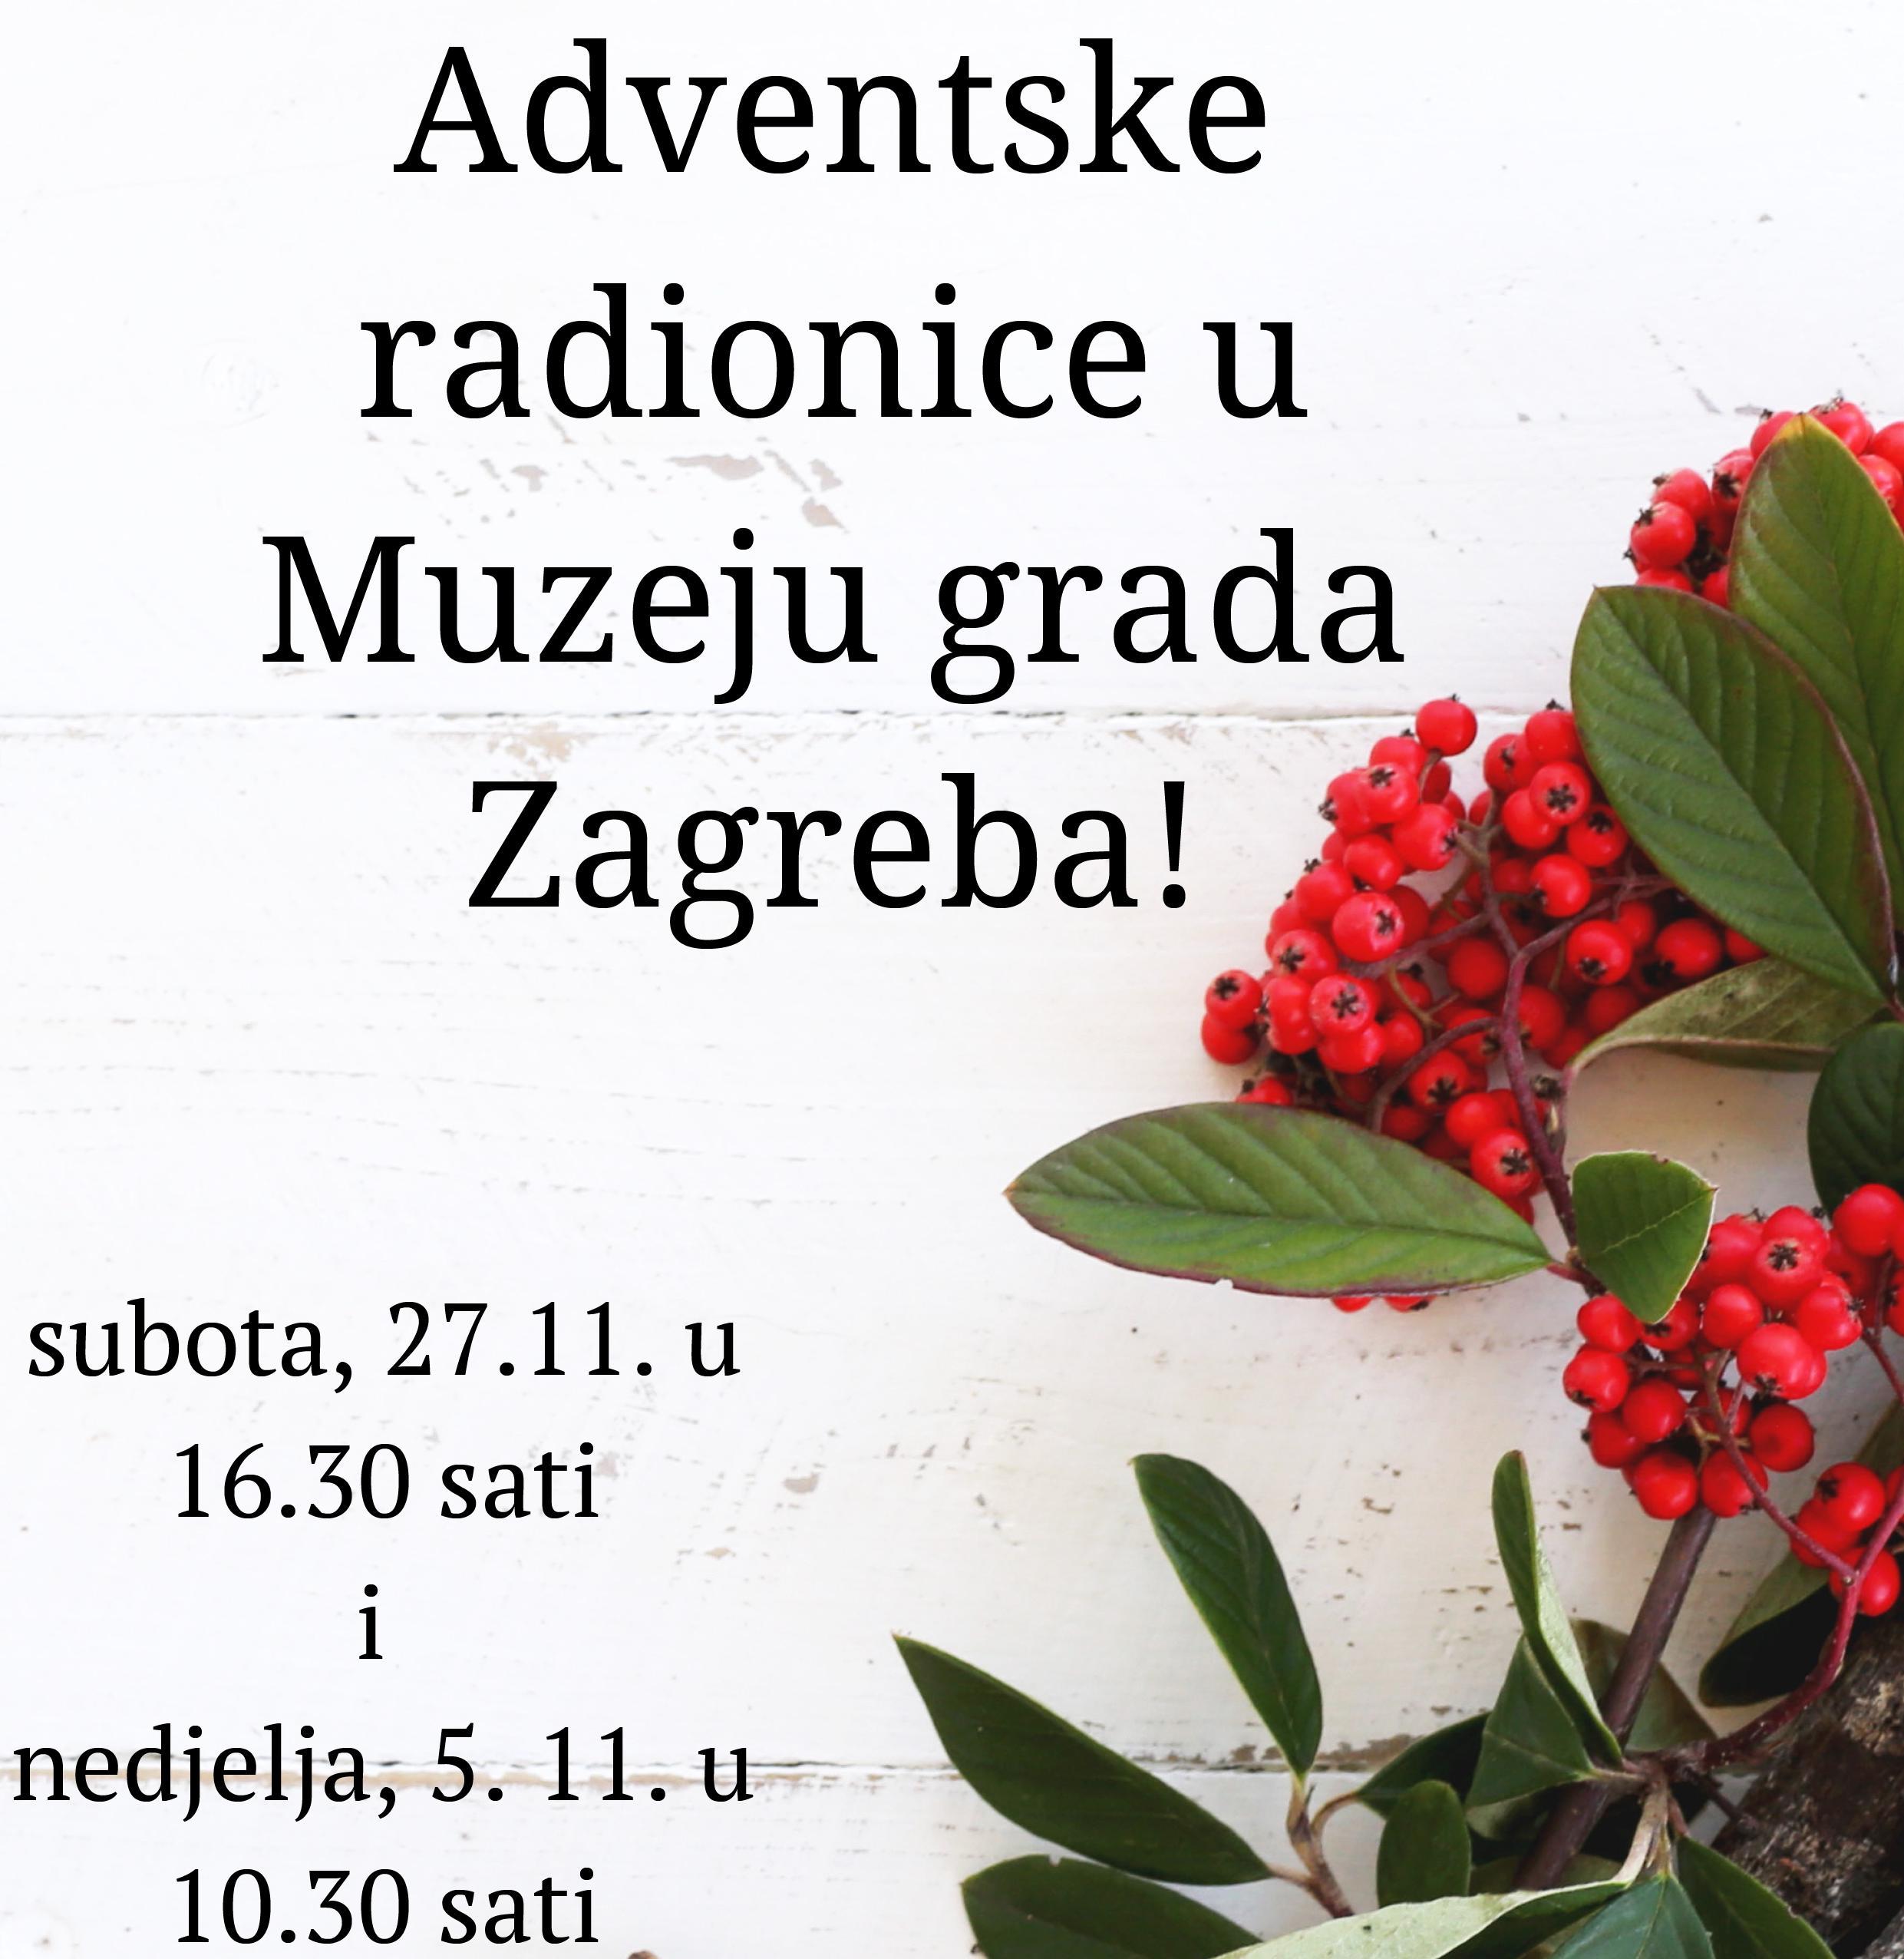 Adventske radionice u Muzeju grada Zagreba